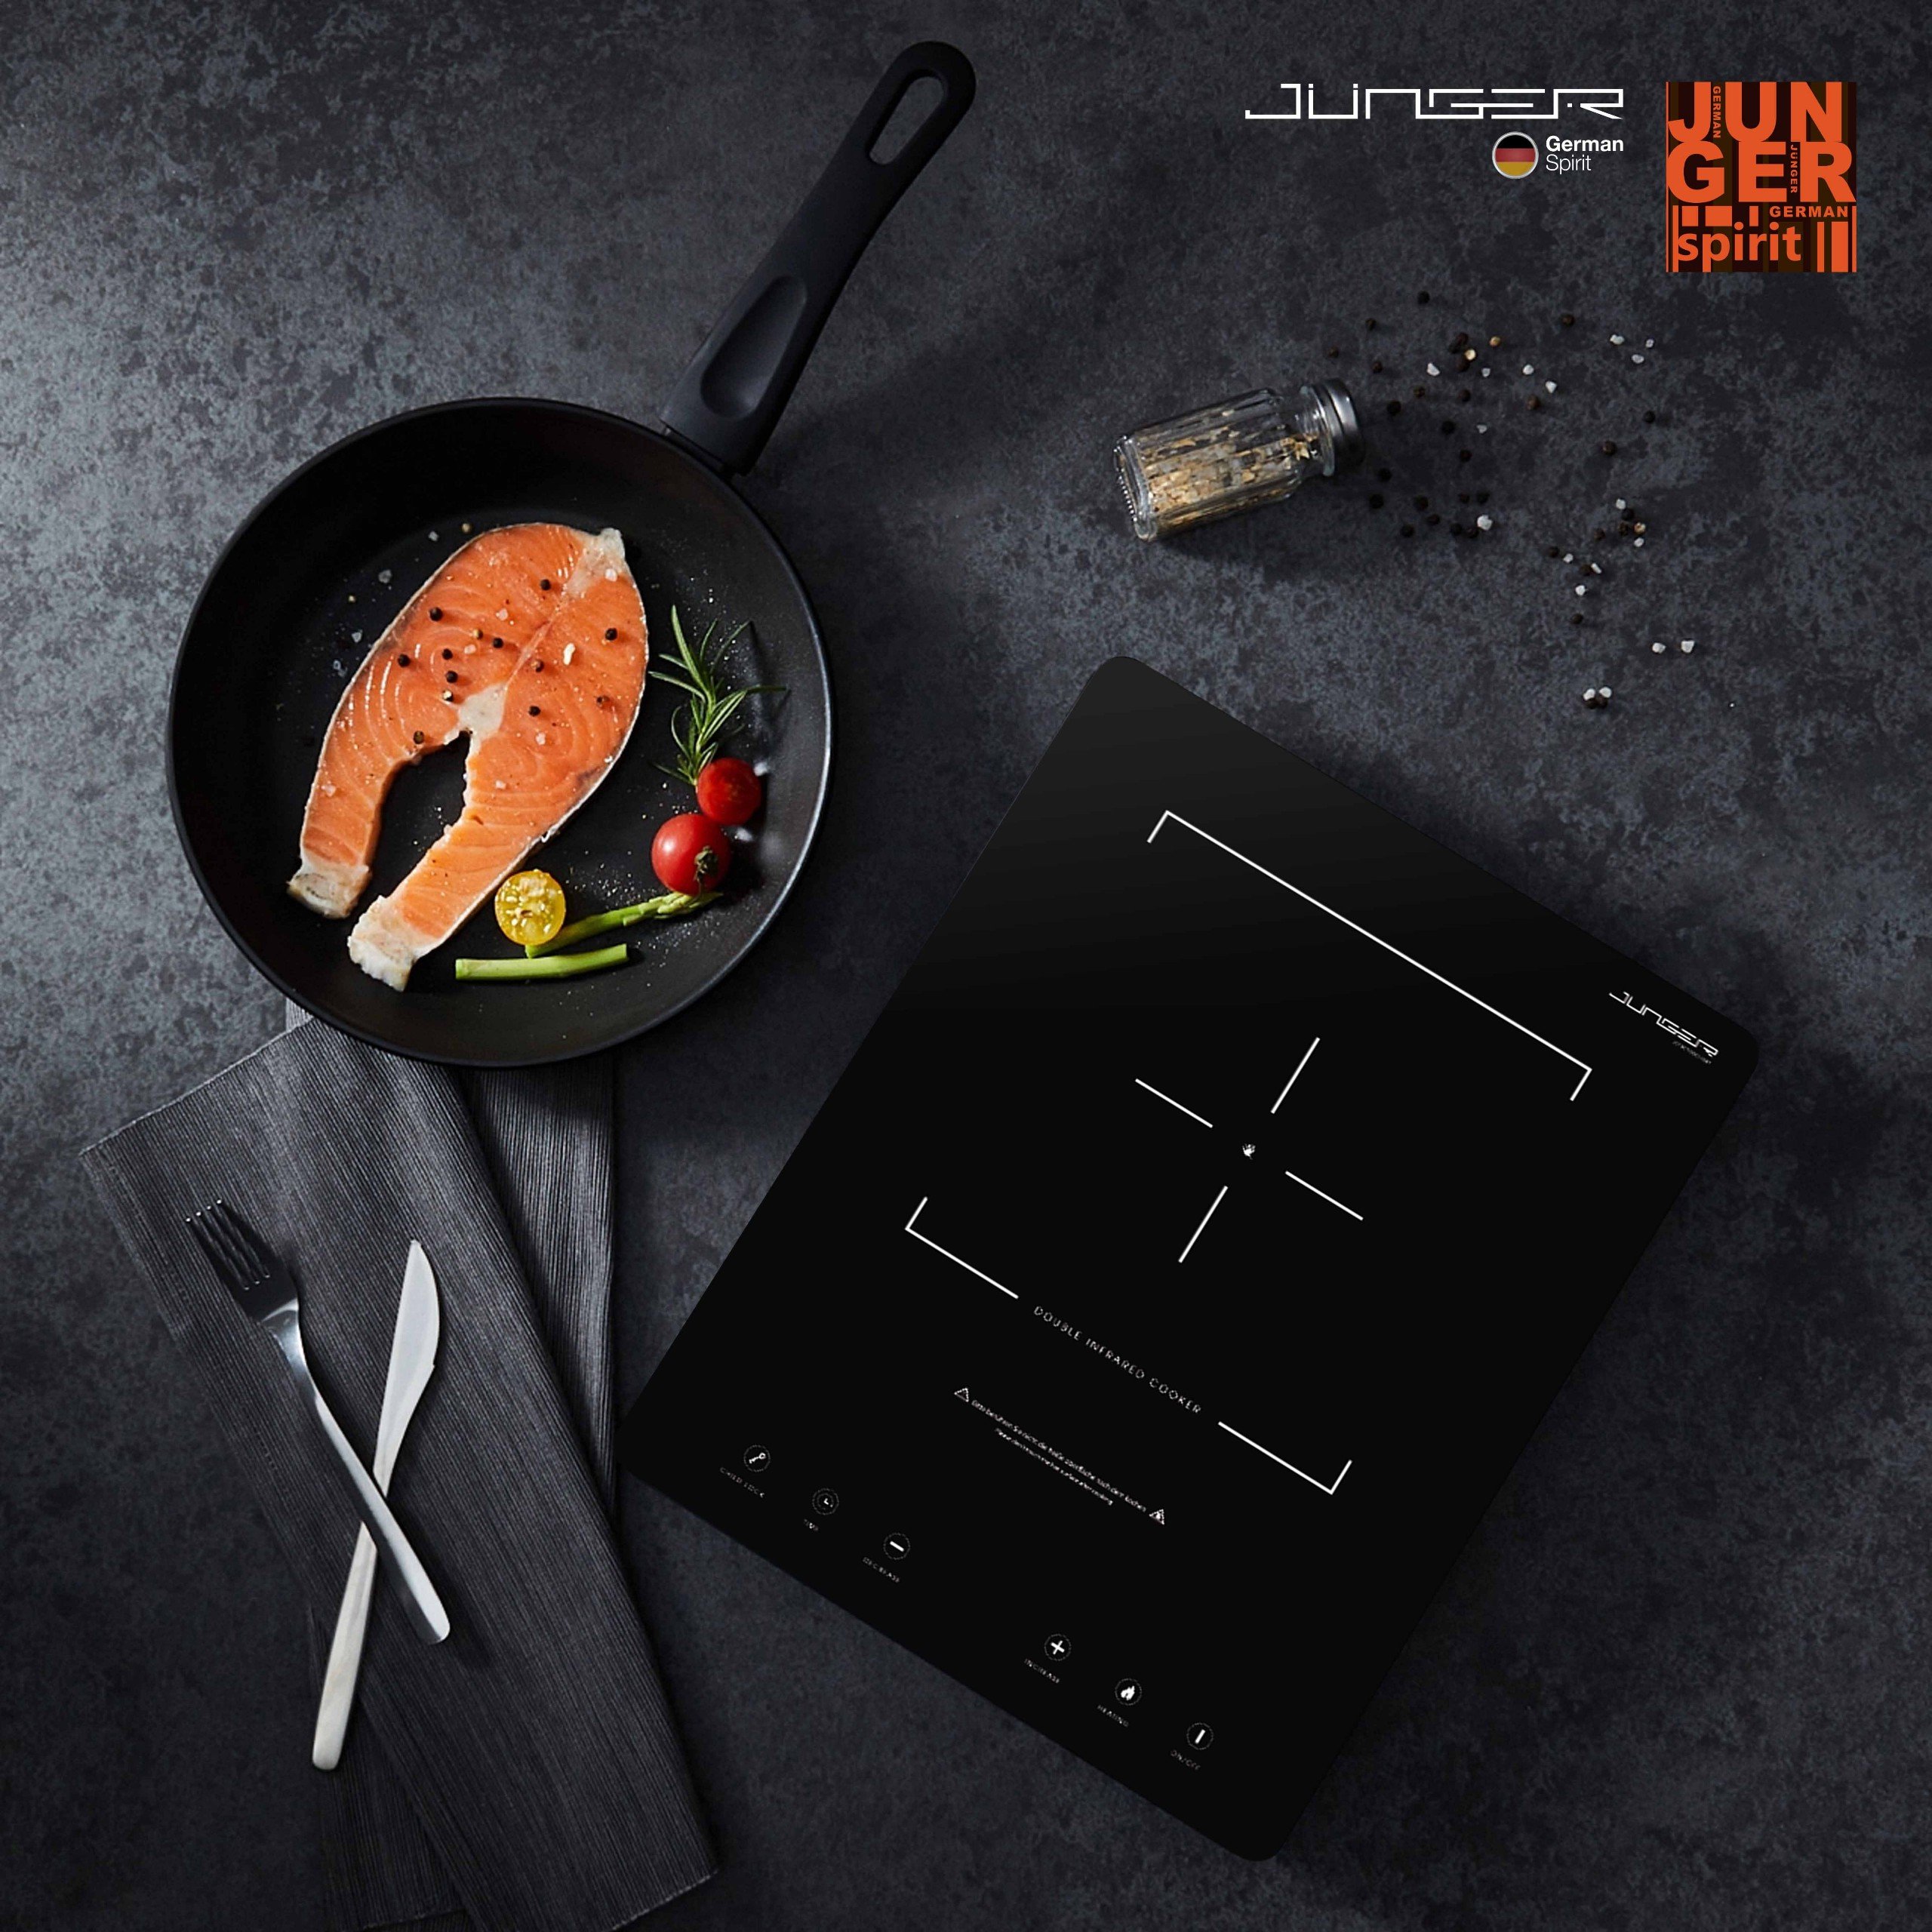 Junger MT-92 được trang bị rất nhiều tính năng thông minh mang lại sự tiện lợi và đảm bảo an toàn tuyệt đối cho bếp và người sử dụng.